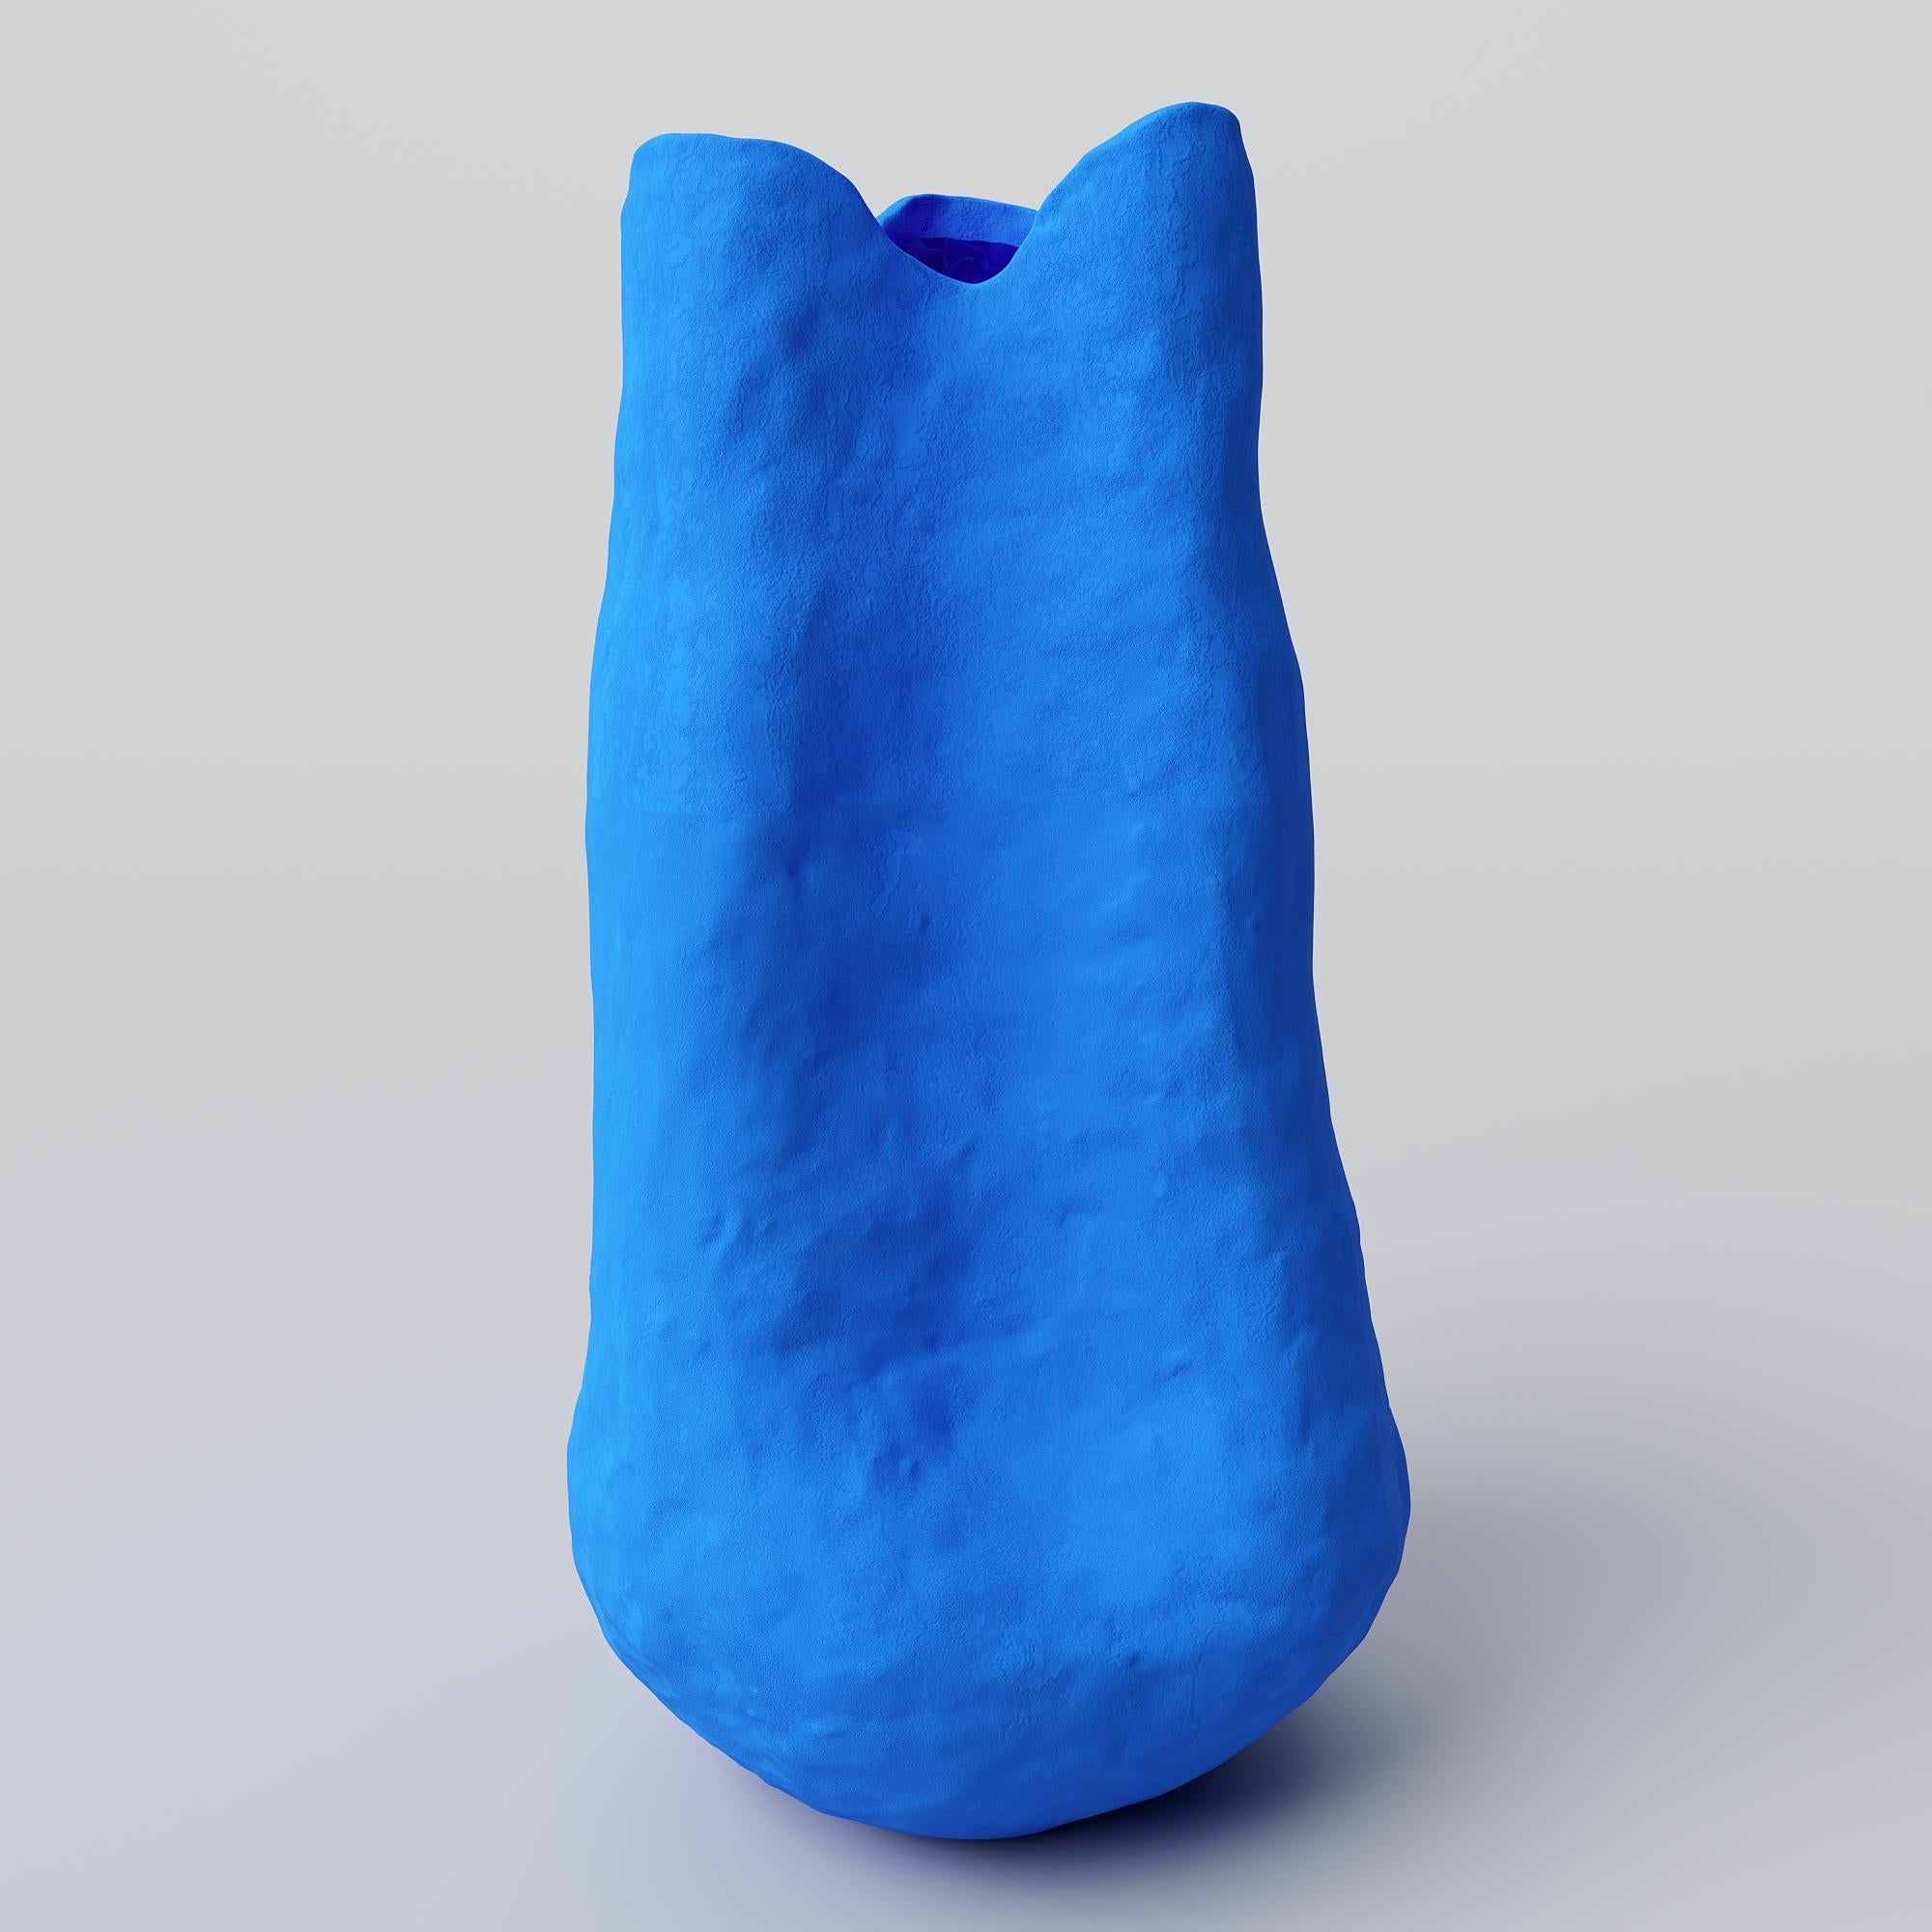 Mit ihrem ruhigen, mattblauen Farbton und ihrer authentischen Oberfläche verkörpert die Barbara-Vase die kühne und kreative Essenz der künstlerischen Vision von Yves Klein.

Inspiriert von Yves Kleins Erforschung des Unendlichen, des Undefinierbaren